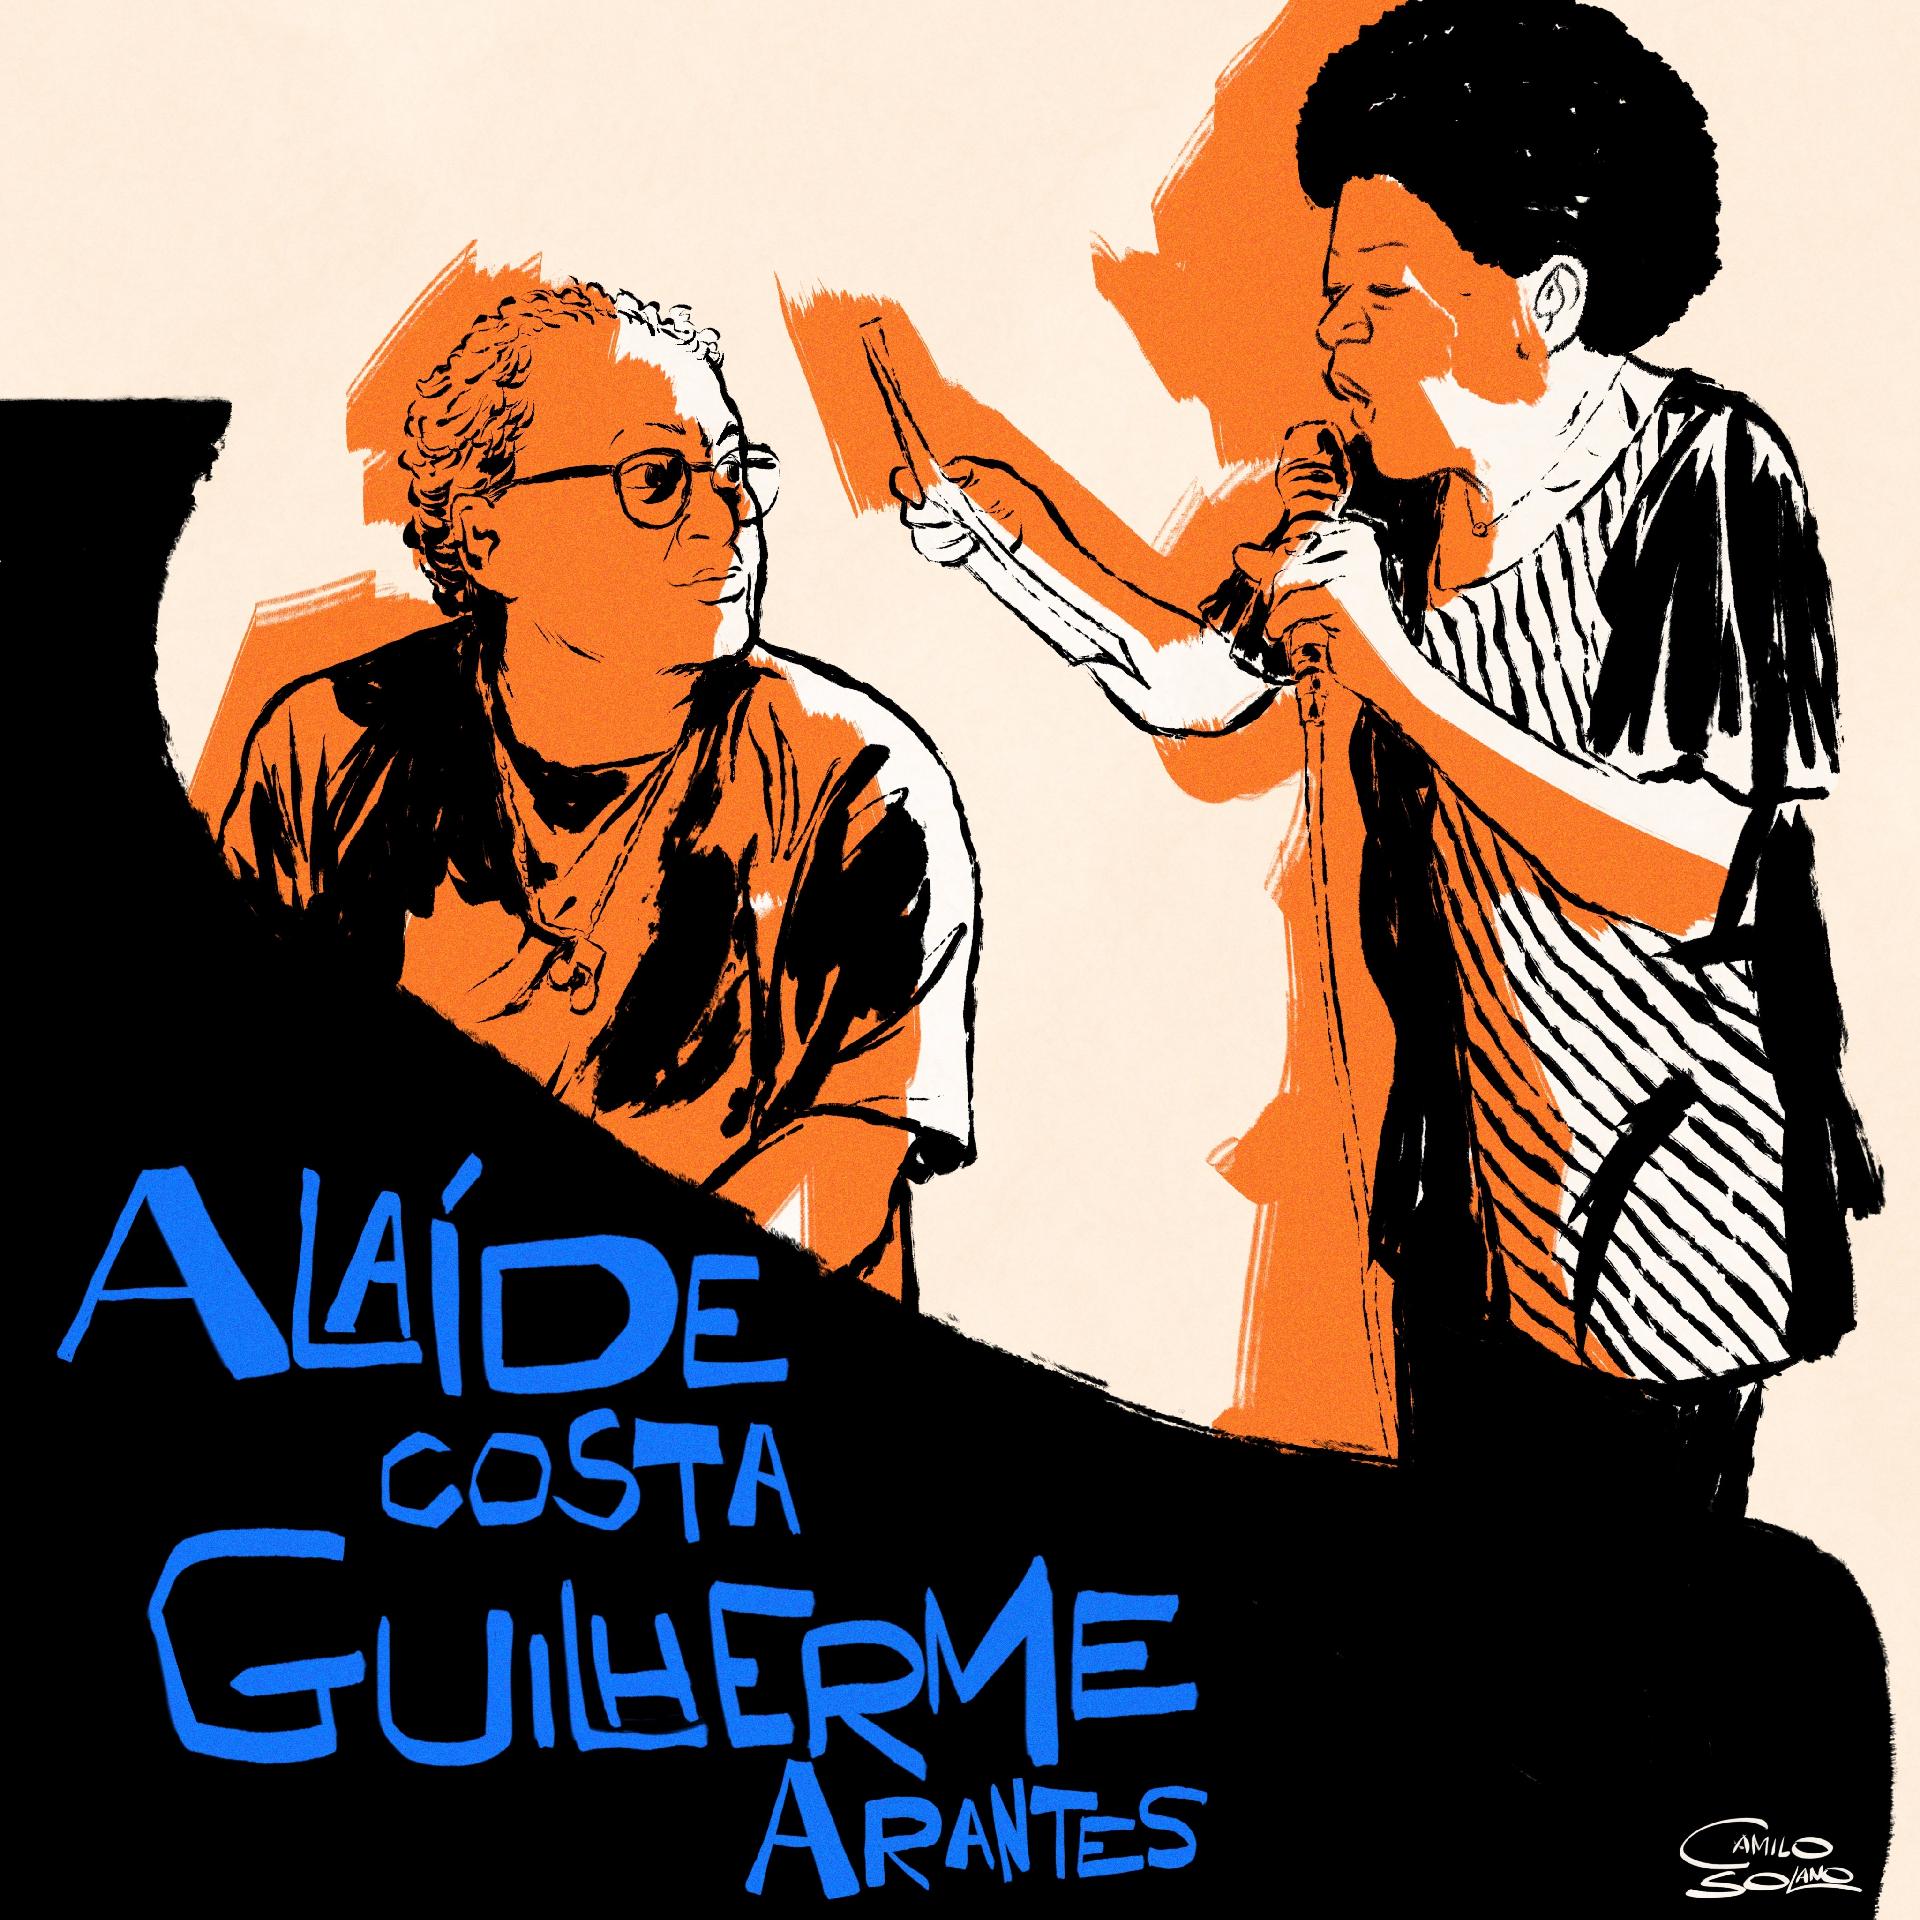 revistaprosaversoearte.com - Alaíde Costa e Guilherme Arantes em clássico 'Meu Mundo e Nada Mais'